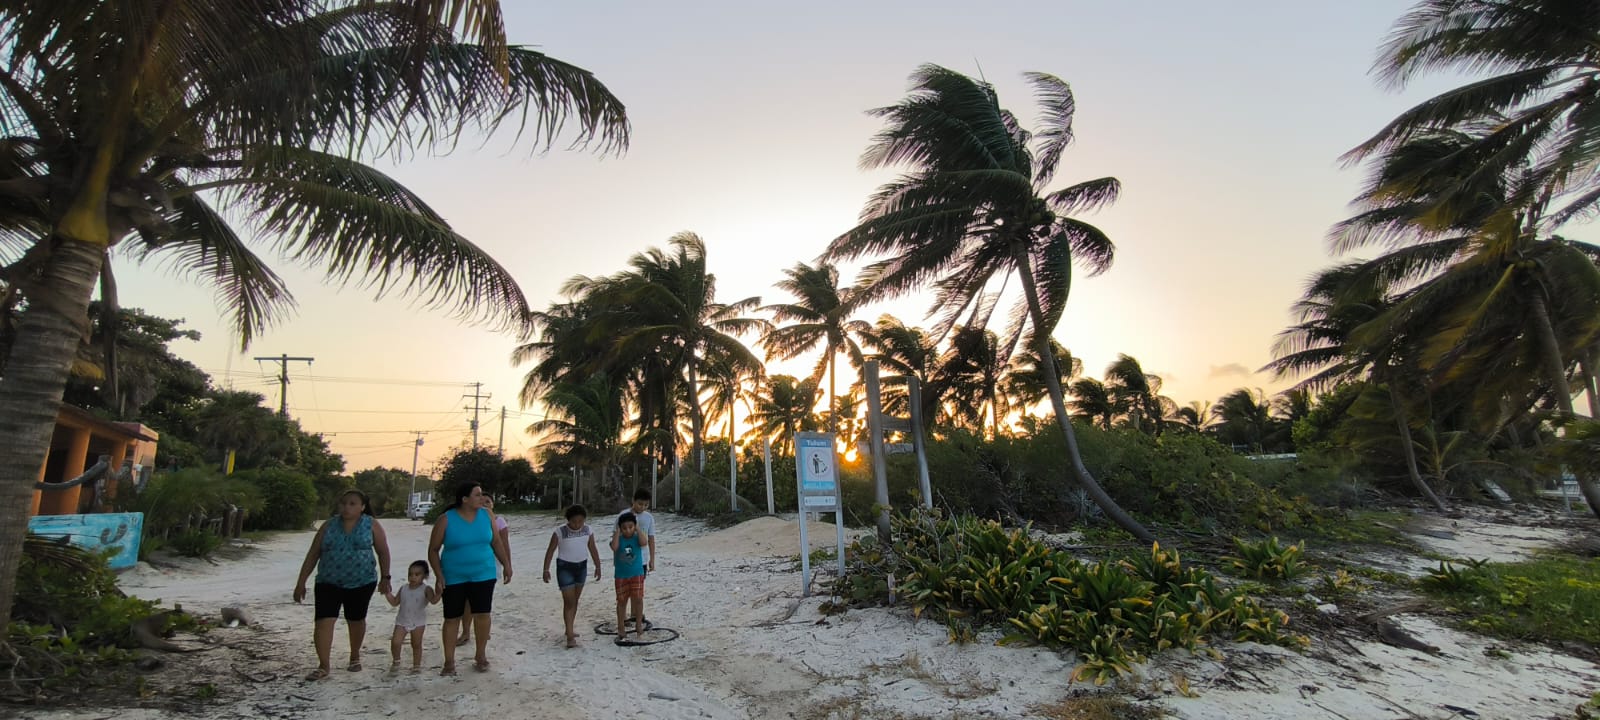 El gobierno de Quintana Roo decretó la alerta naranja para algunos municipios del estado ante la inminente llegada del huracán Beryl. (Foto: Adriana Varillas)